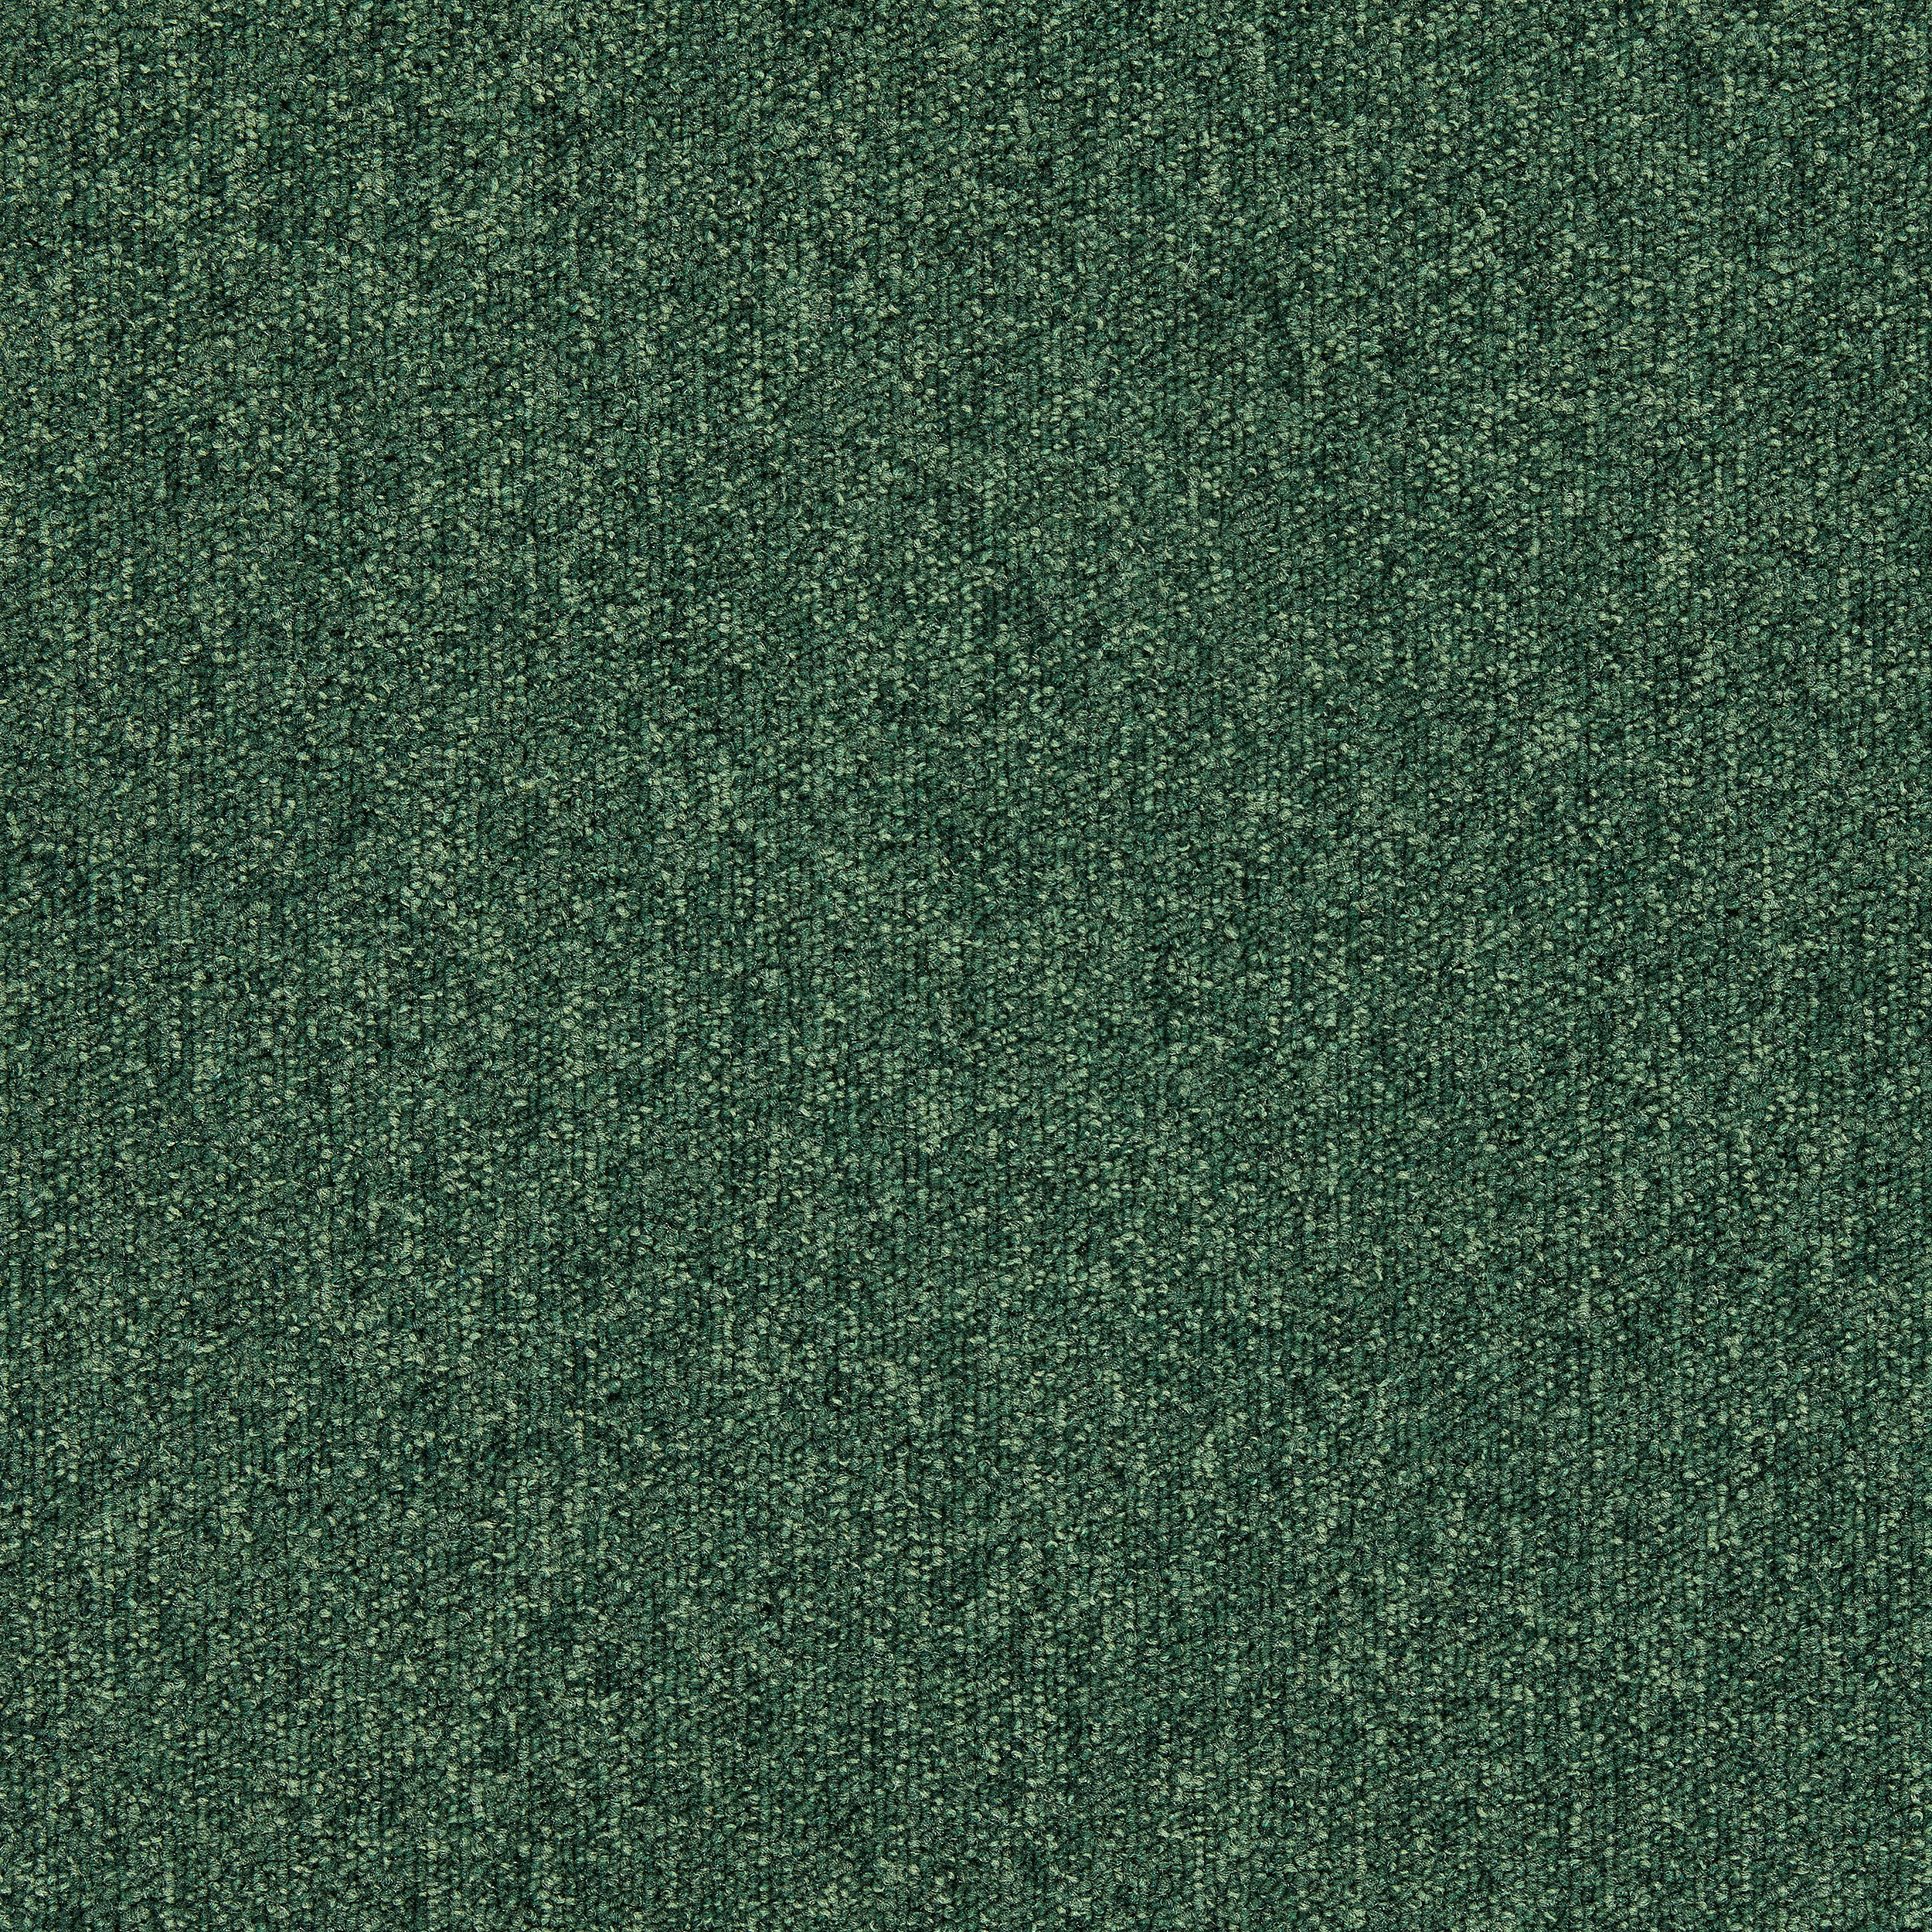 Heuga 727 Carpet Tile In Bottle Green afbeeldingnummer 19